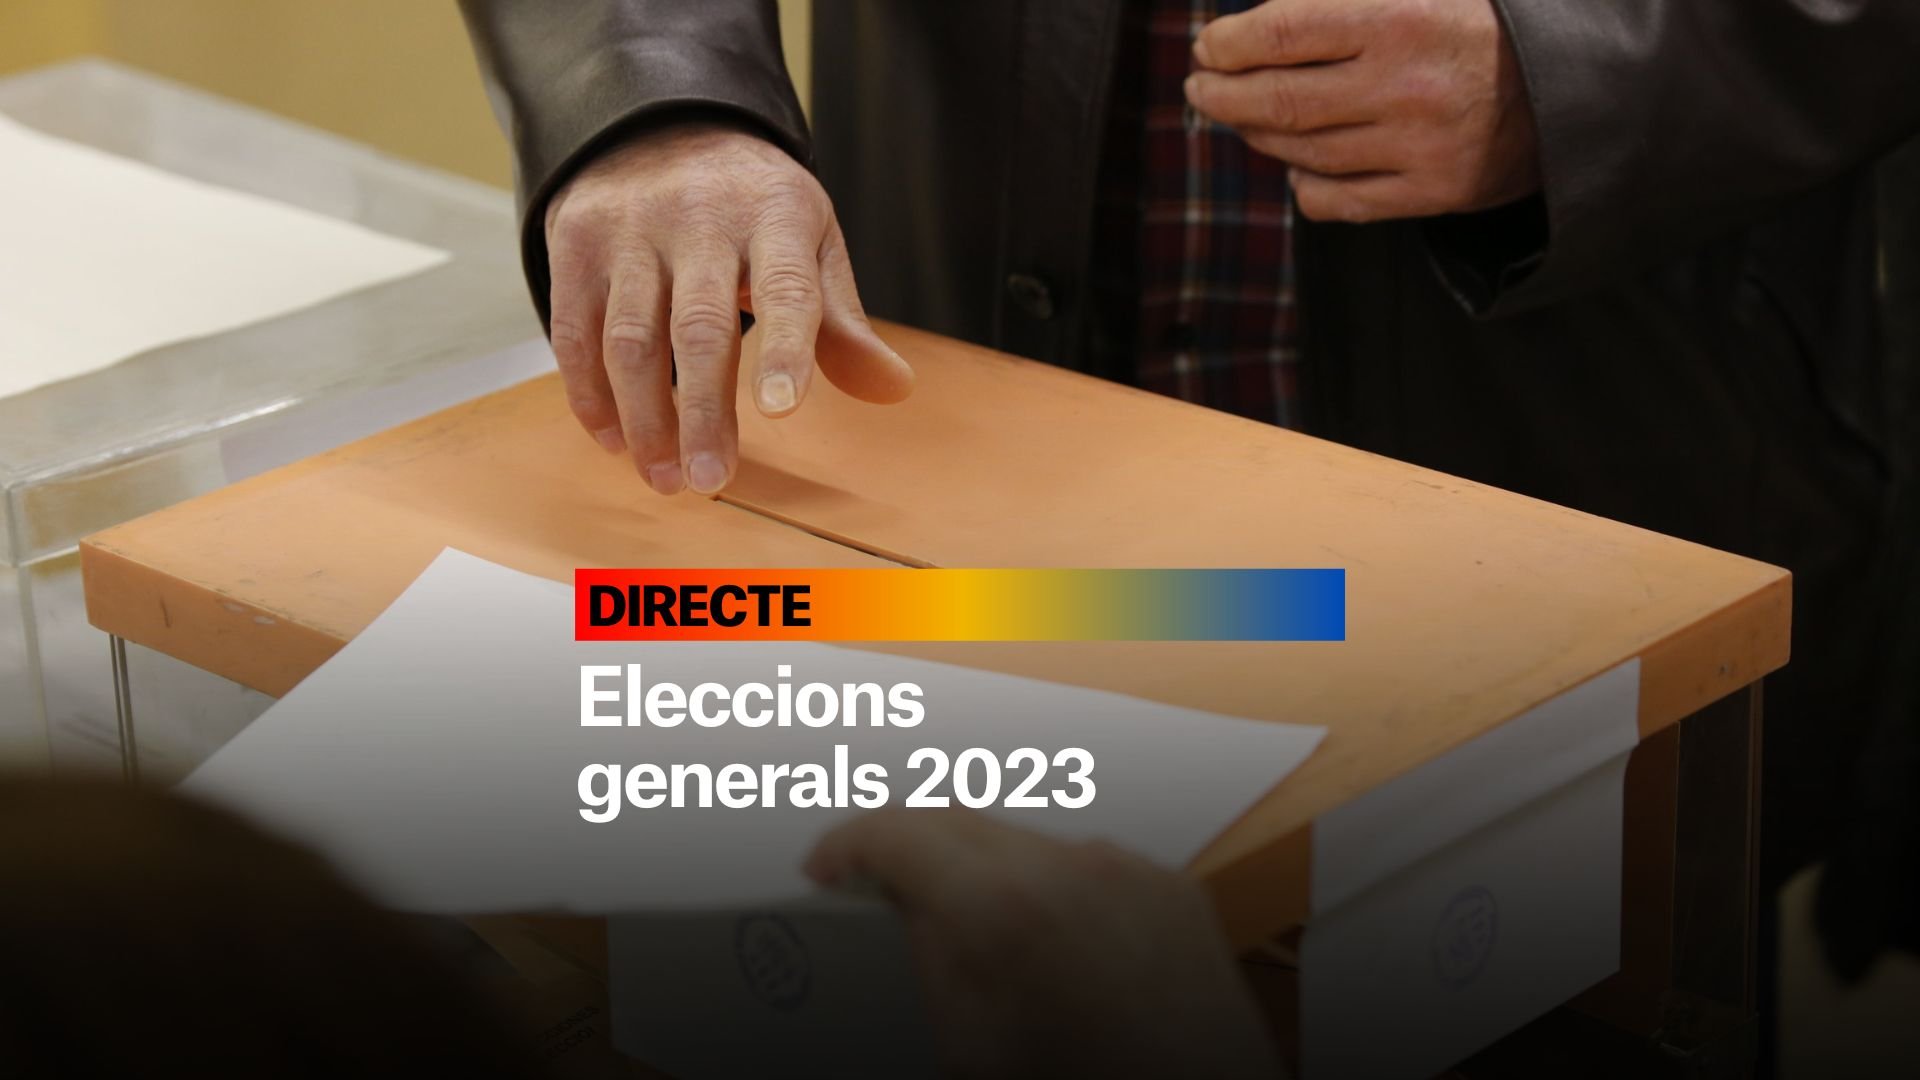 Eleccions generals 2023, DIRECTE | Resultats, reaccions i possibles pactes